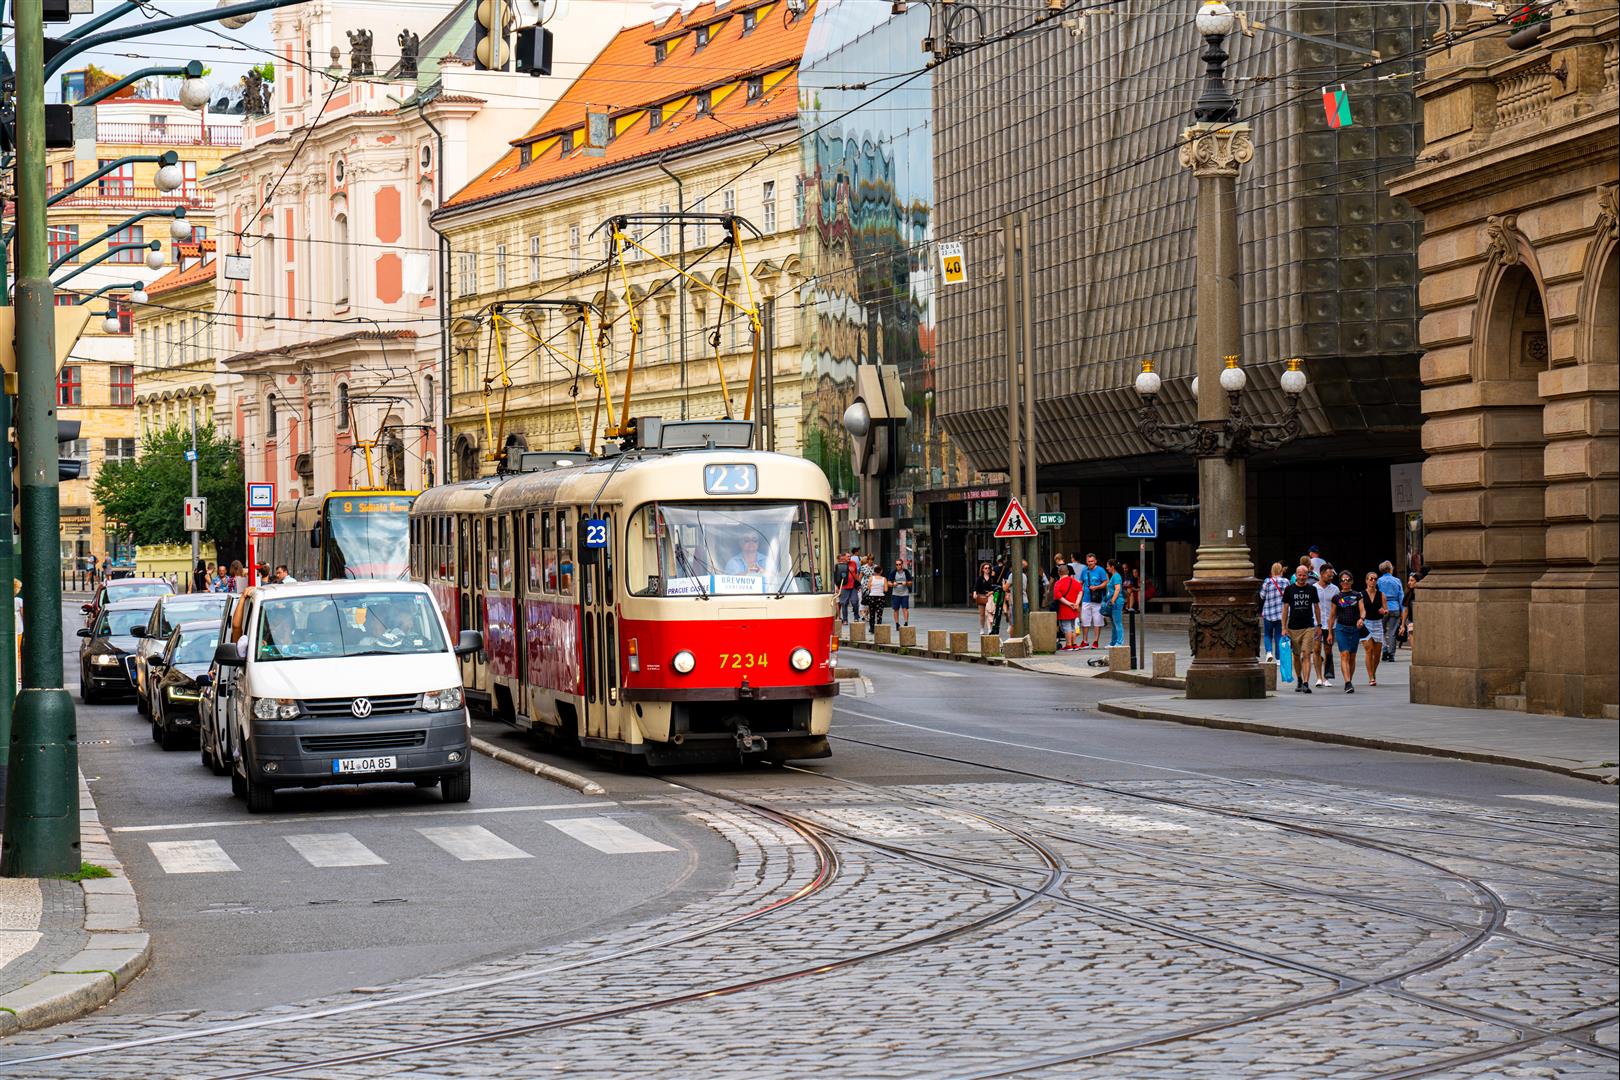 [捷克/布拉格] 布拉格交通 ，購買車票搭乘輕軌 Trams，運用 Google Map 玩遍布拉格